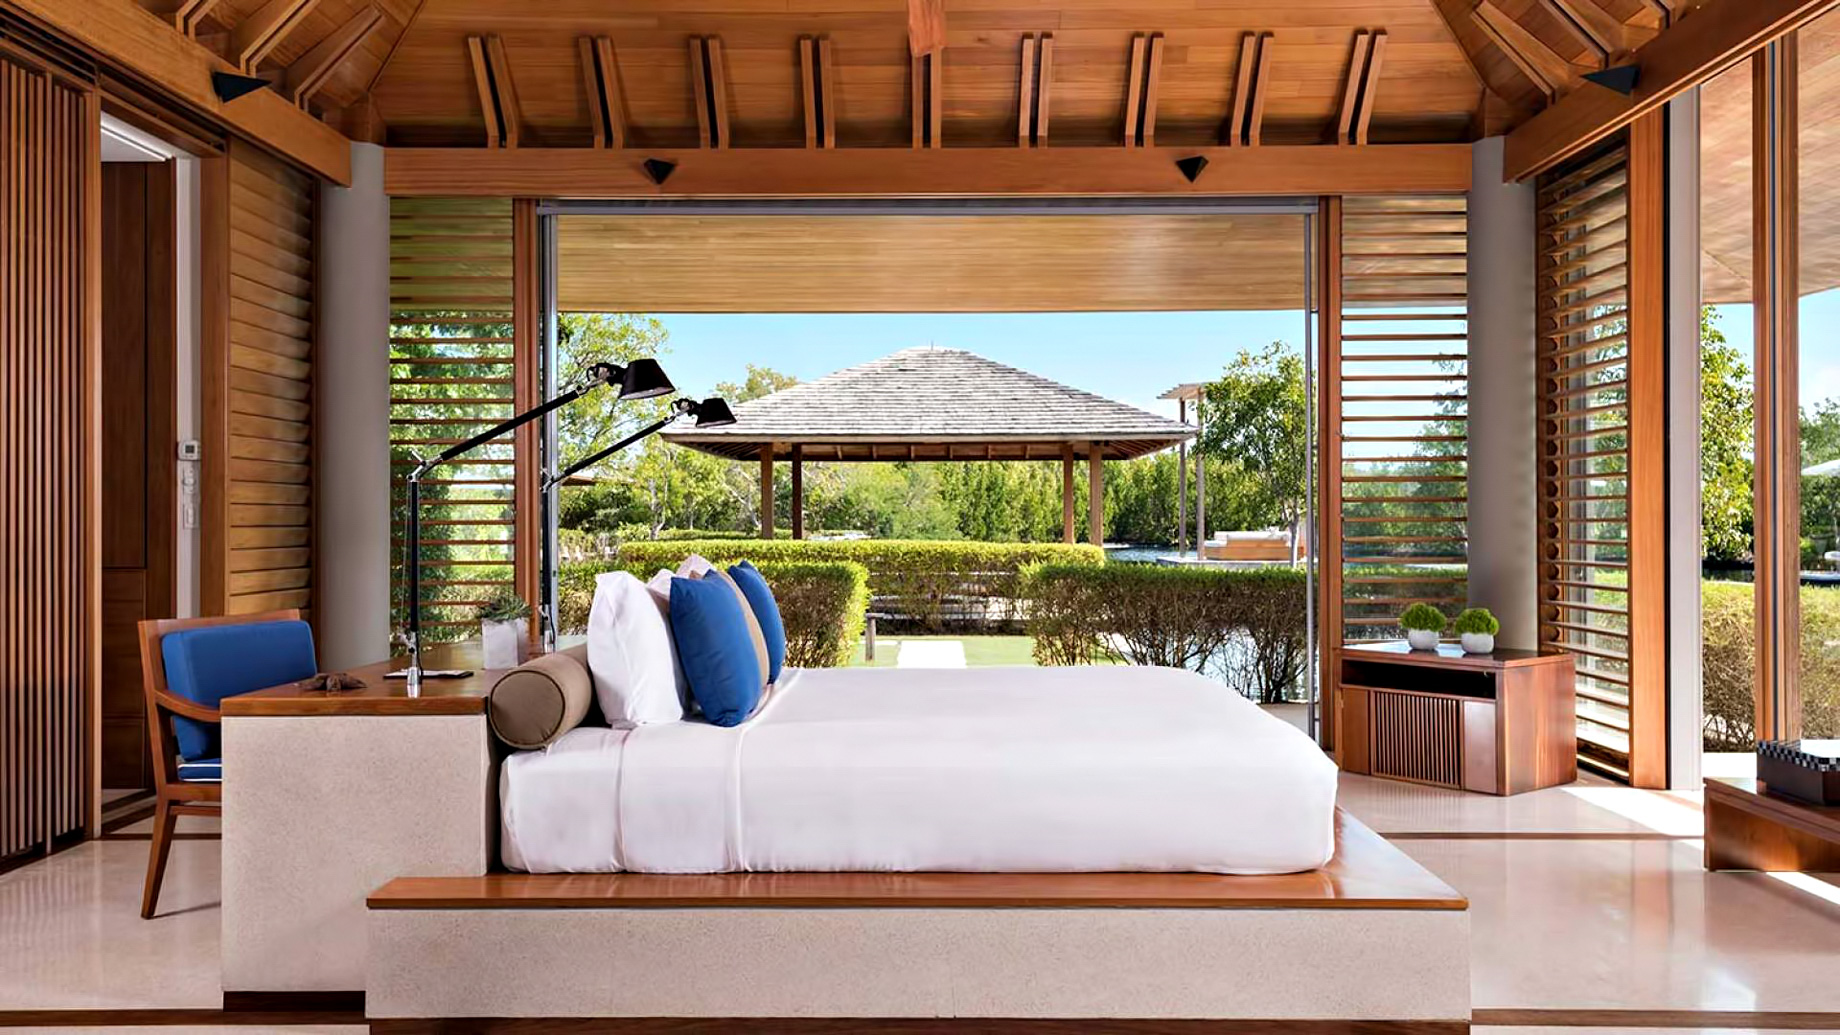 Amanyara Resort – Providenciales, Turks and Caicos Islands – 4 Bedroom Tranquility Villa Bedroom